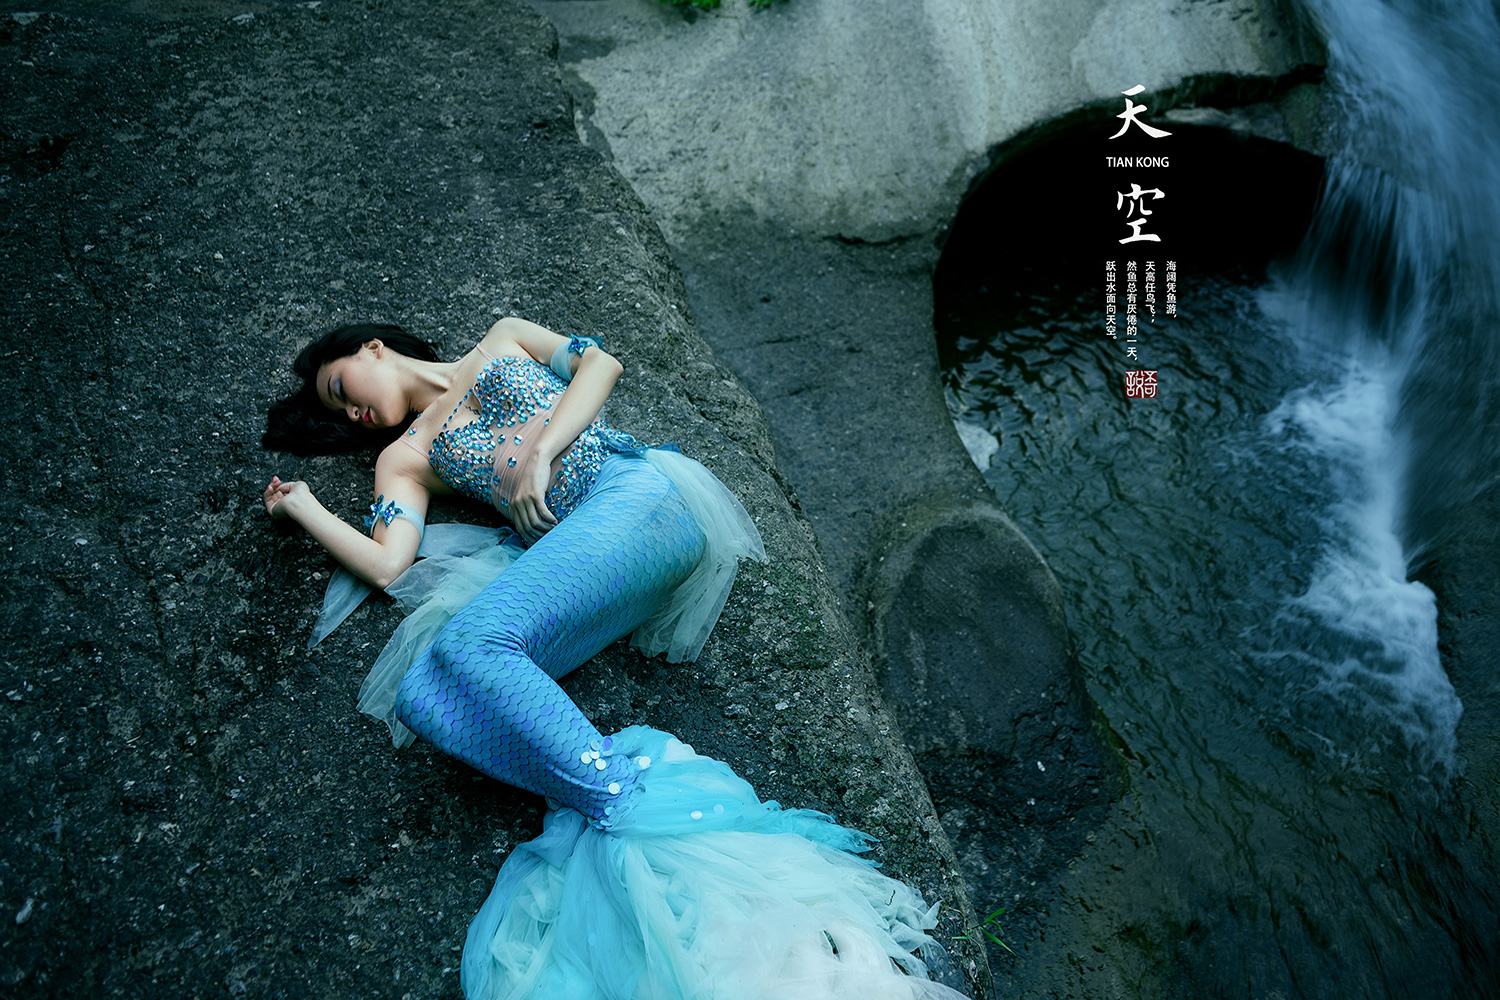 人鱼公主主题摄影 像神话中的仙女一般